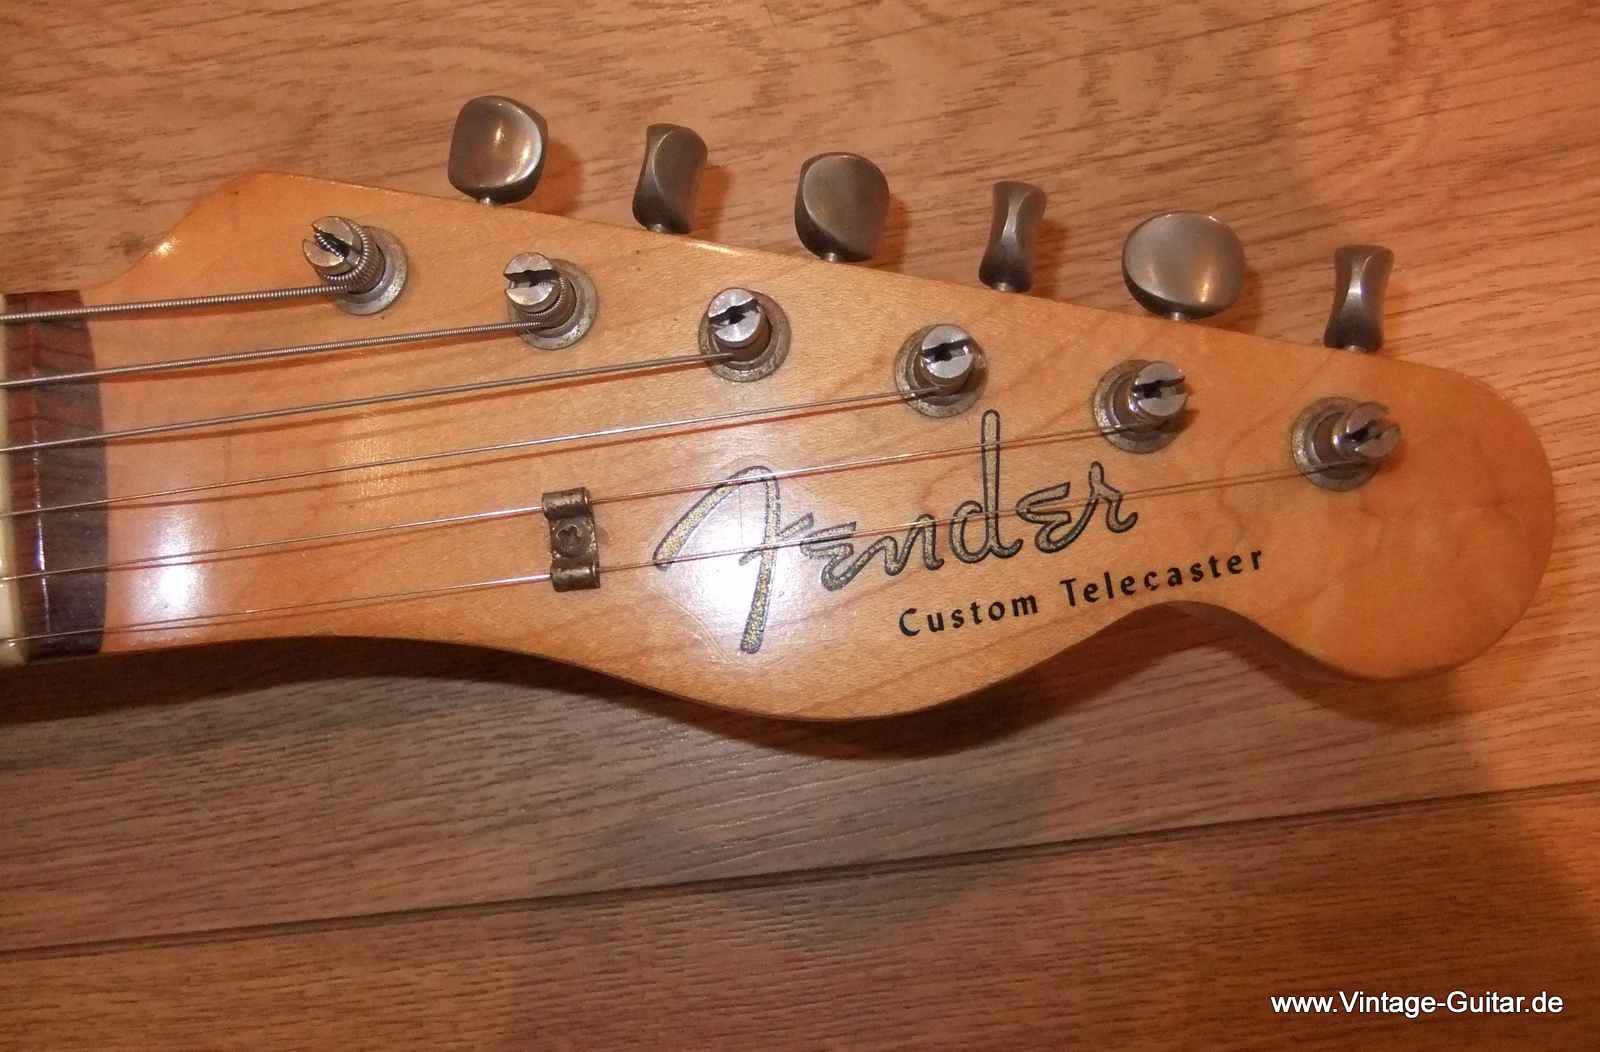 Telecaster_Fender-Custom-brown-case-sunburst-1962-004.jpg